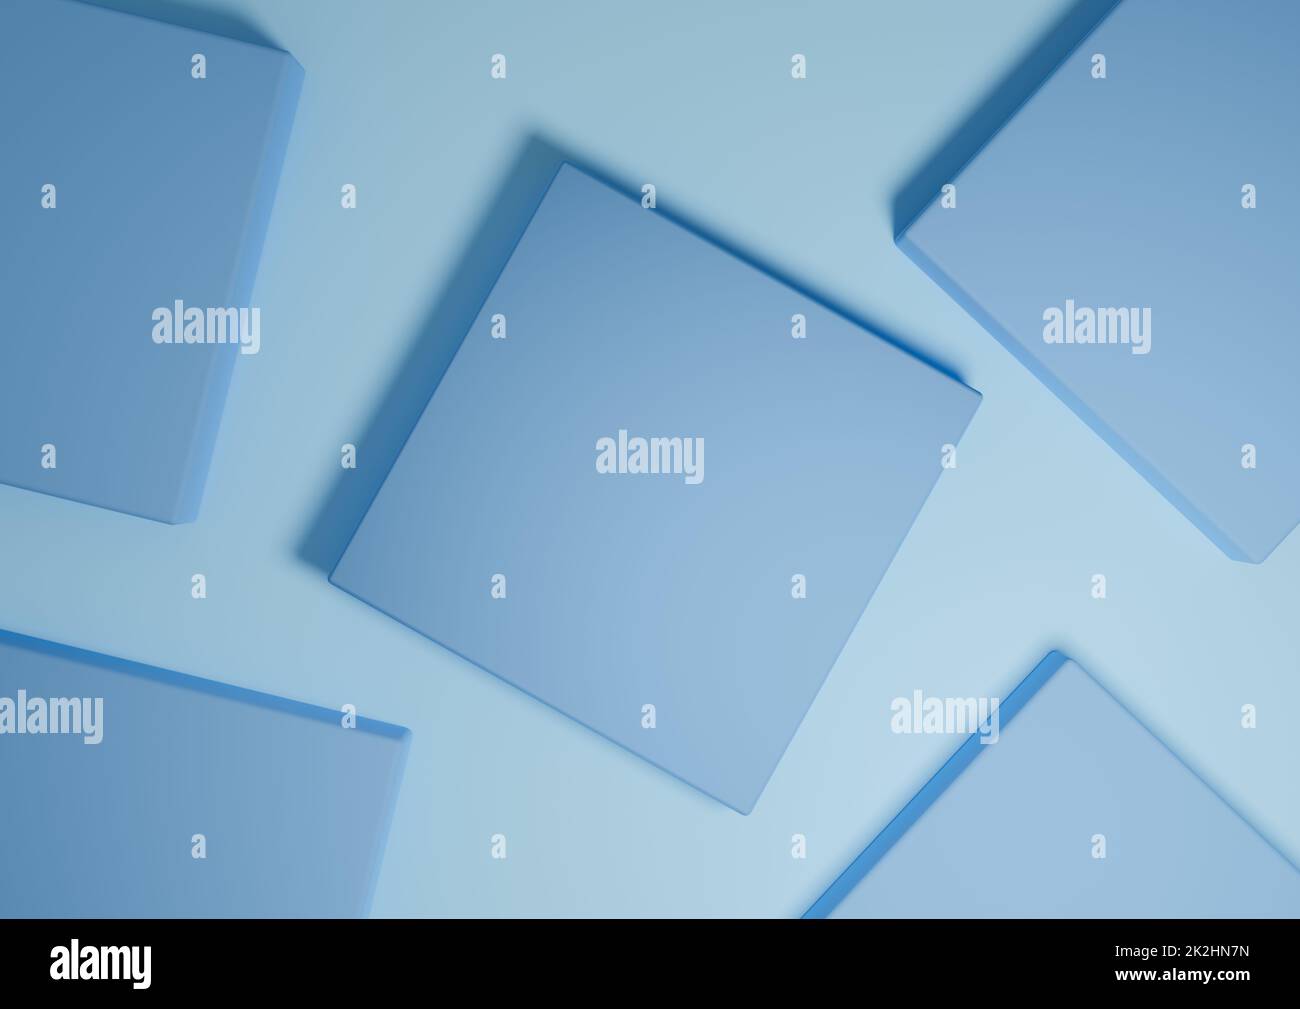 Helles, helles Himmelblau, 3D Rendering minimaler, einfacher Draufsicht flacher Produktdisplay-Hintergrund mit Podestständen und geometrischen Formen Stockfoto